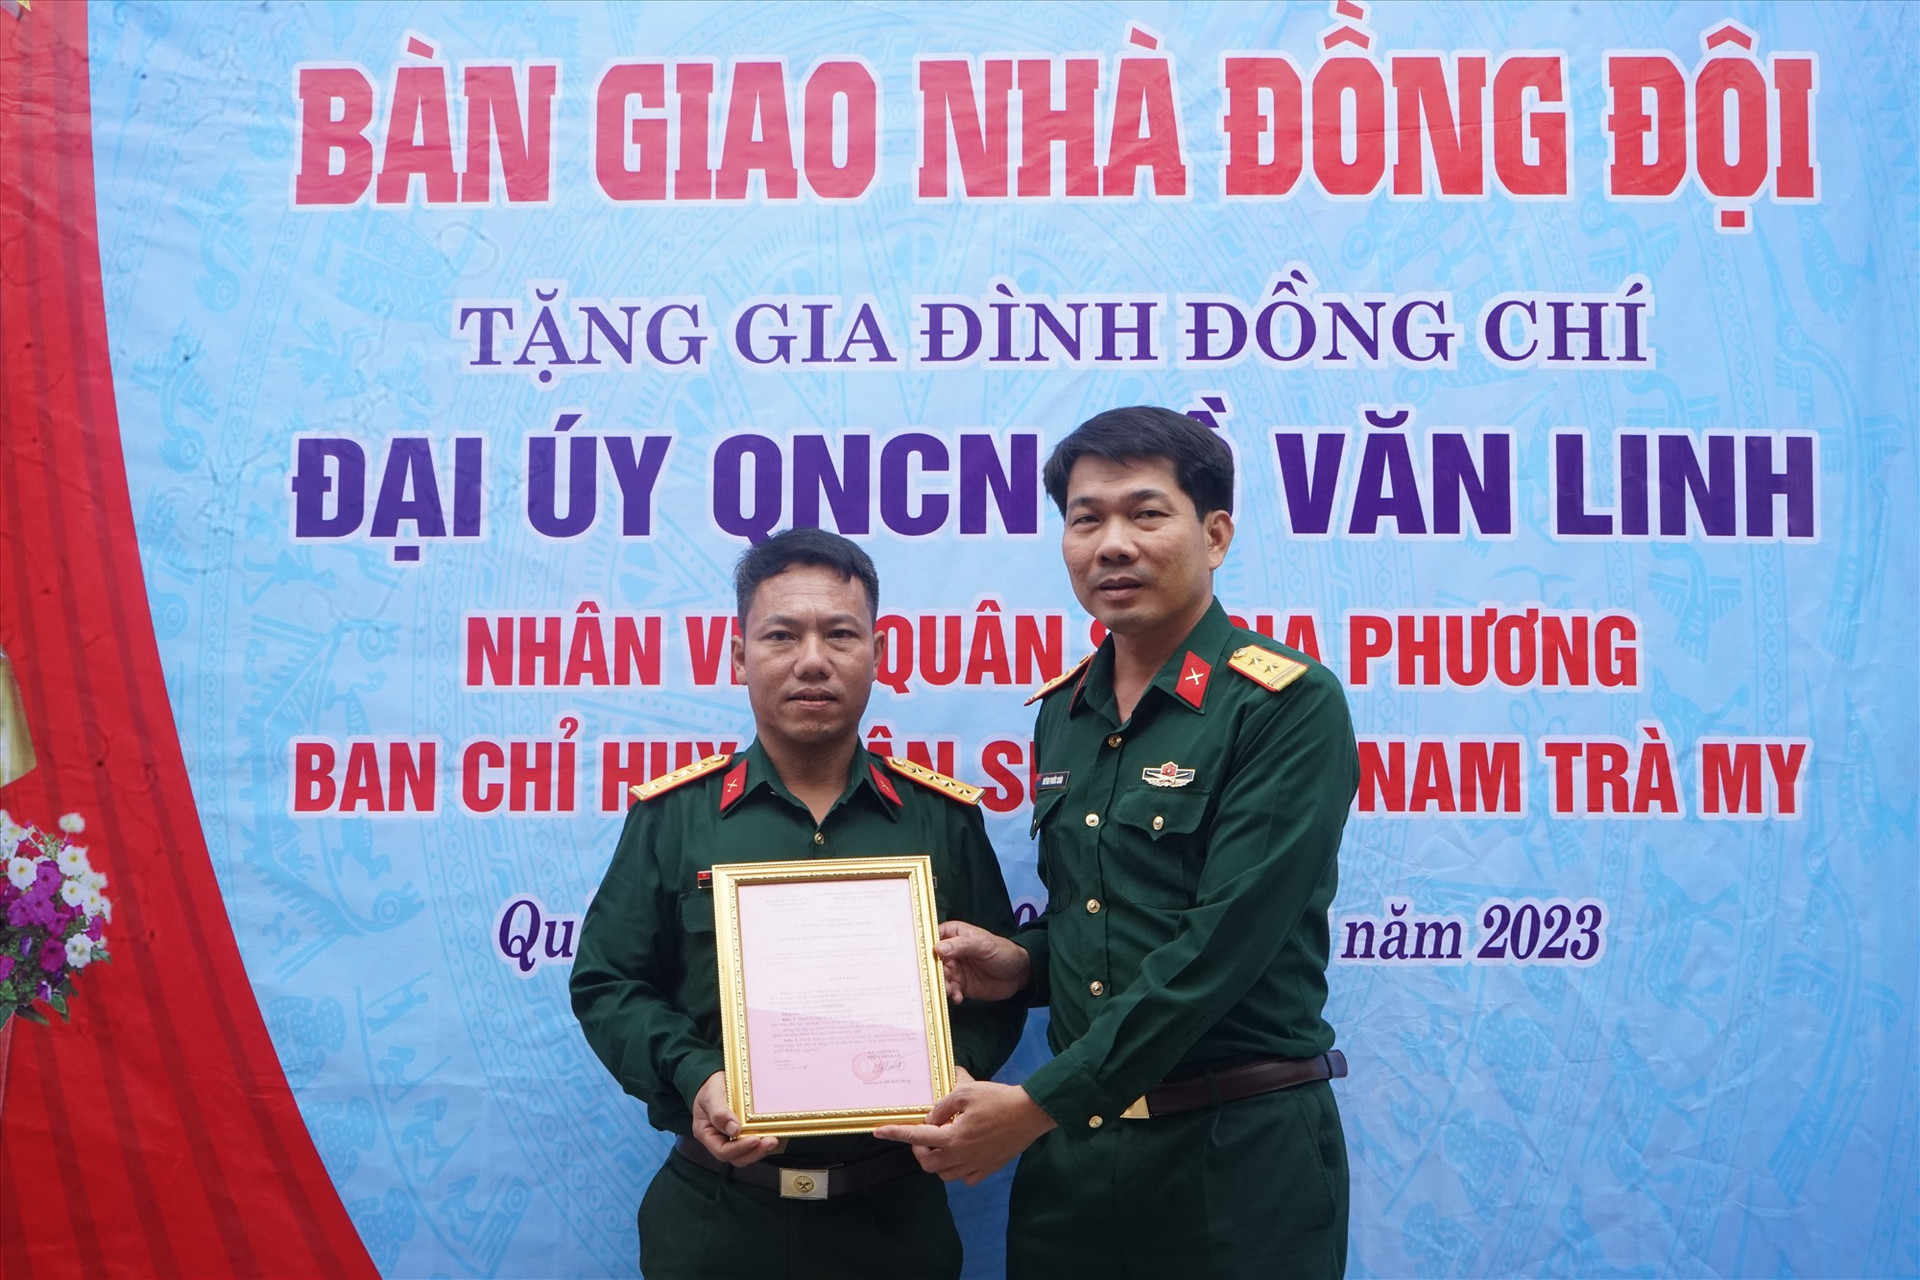 Trao quyết định bàn gia nhà tình nghĩa cho Đại úy quân nhân chuyên nghiệp Hồ Văn Linh (bên trái). Ảnh: PHÚ THIỆN